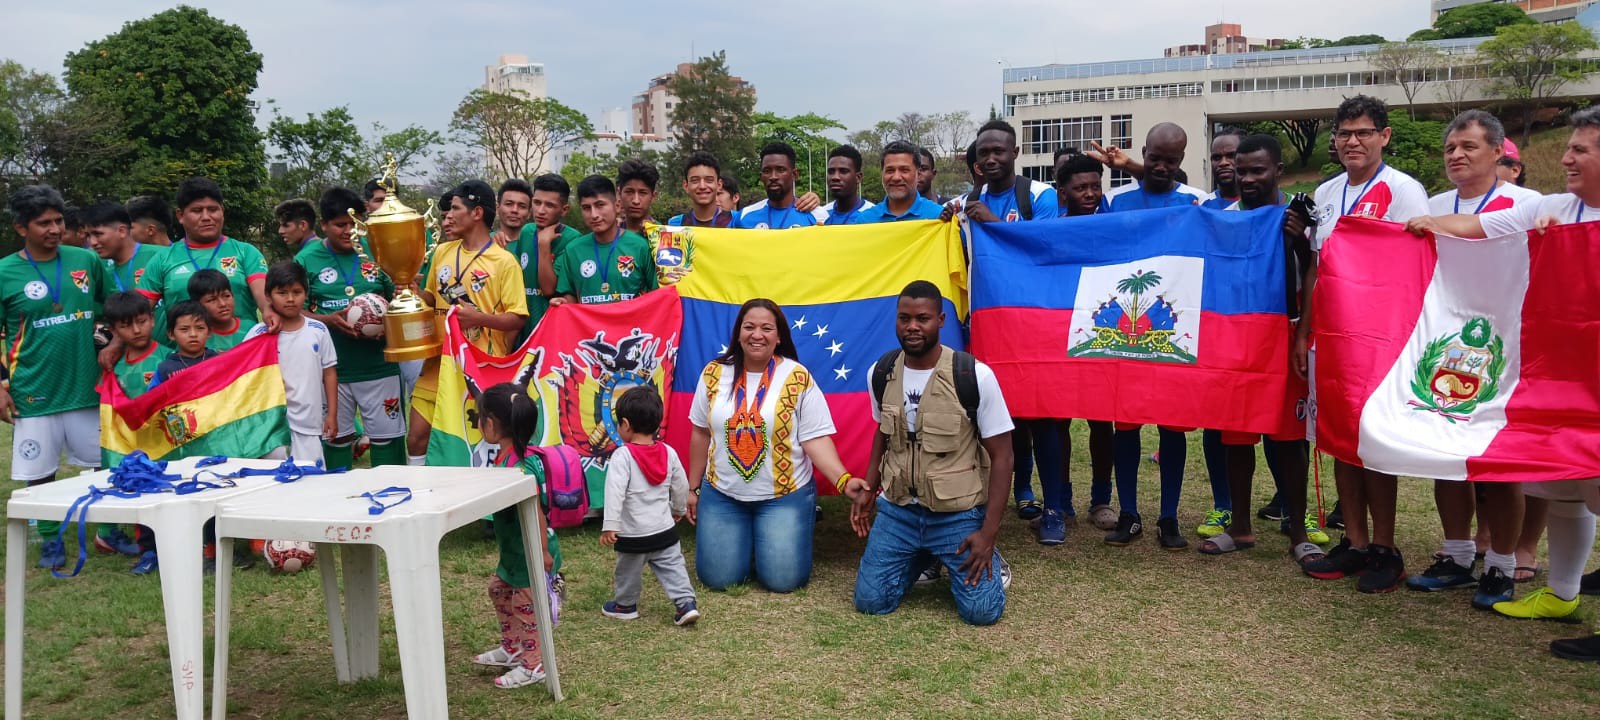 Migrantes em Minas Gerais se reúnem para atividades como torneios esportivos